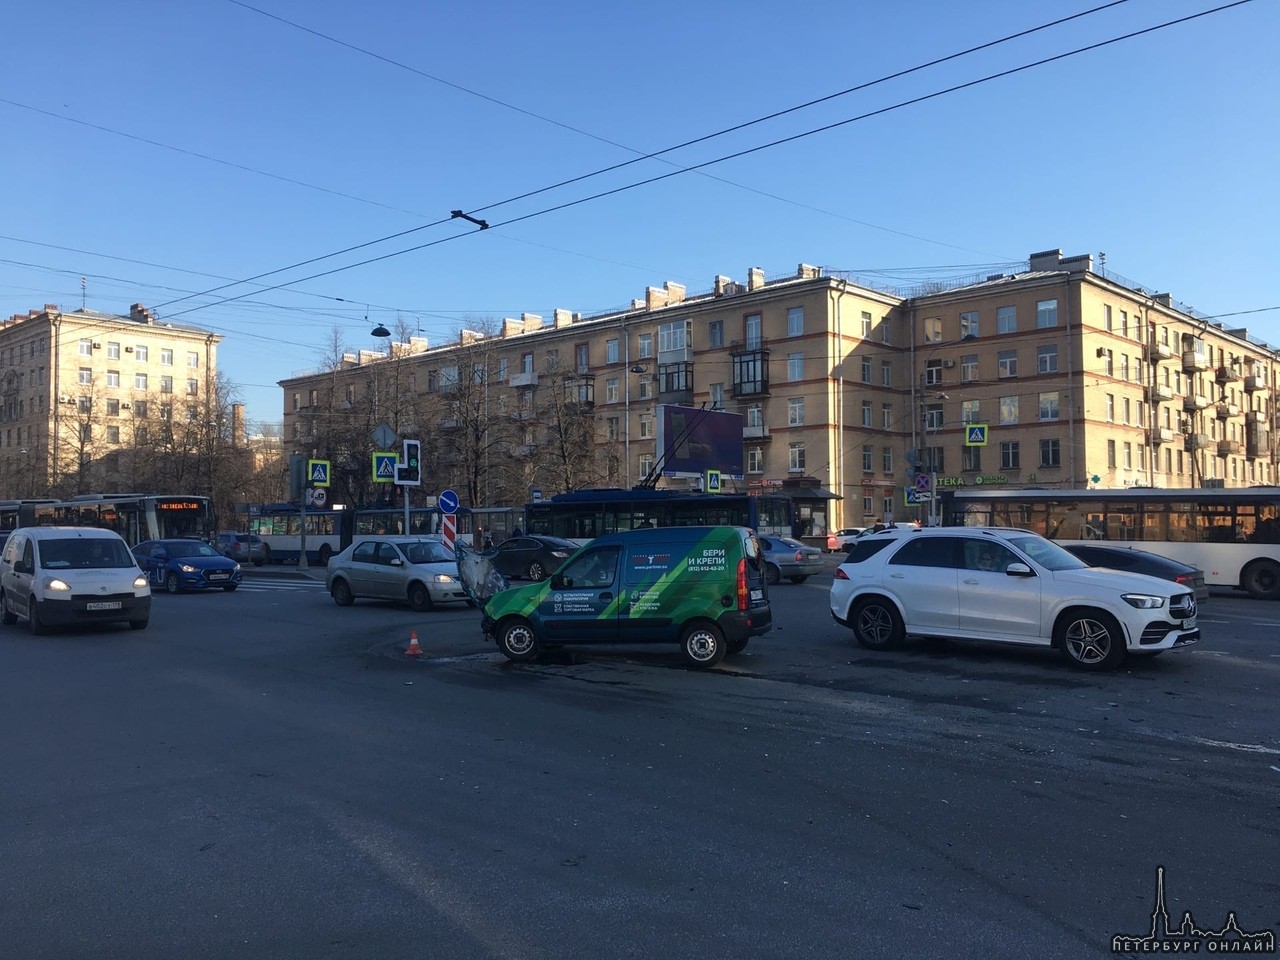 ДТП на пересечении Варшавской улицы и Ленинского проспекта , один улетел на газон от удара , дпс на ...